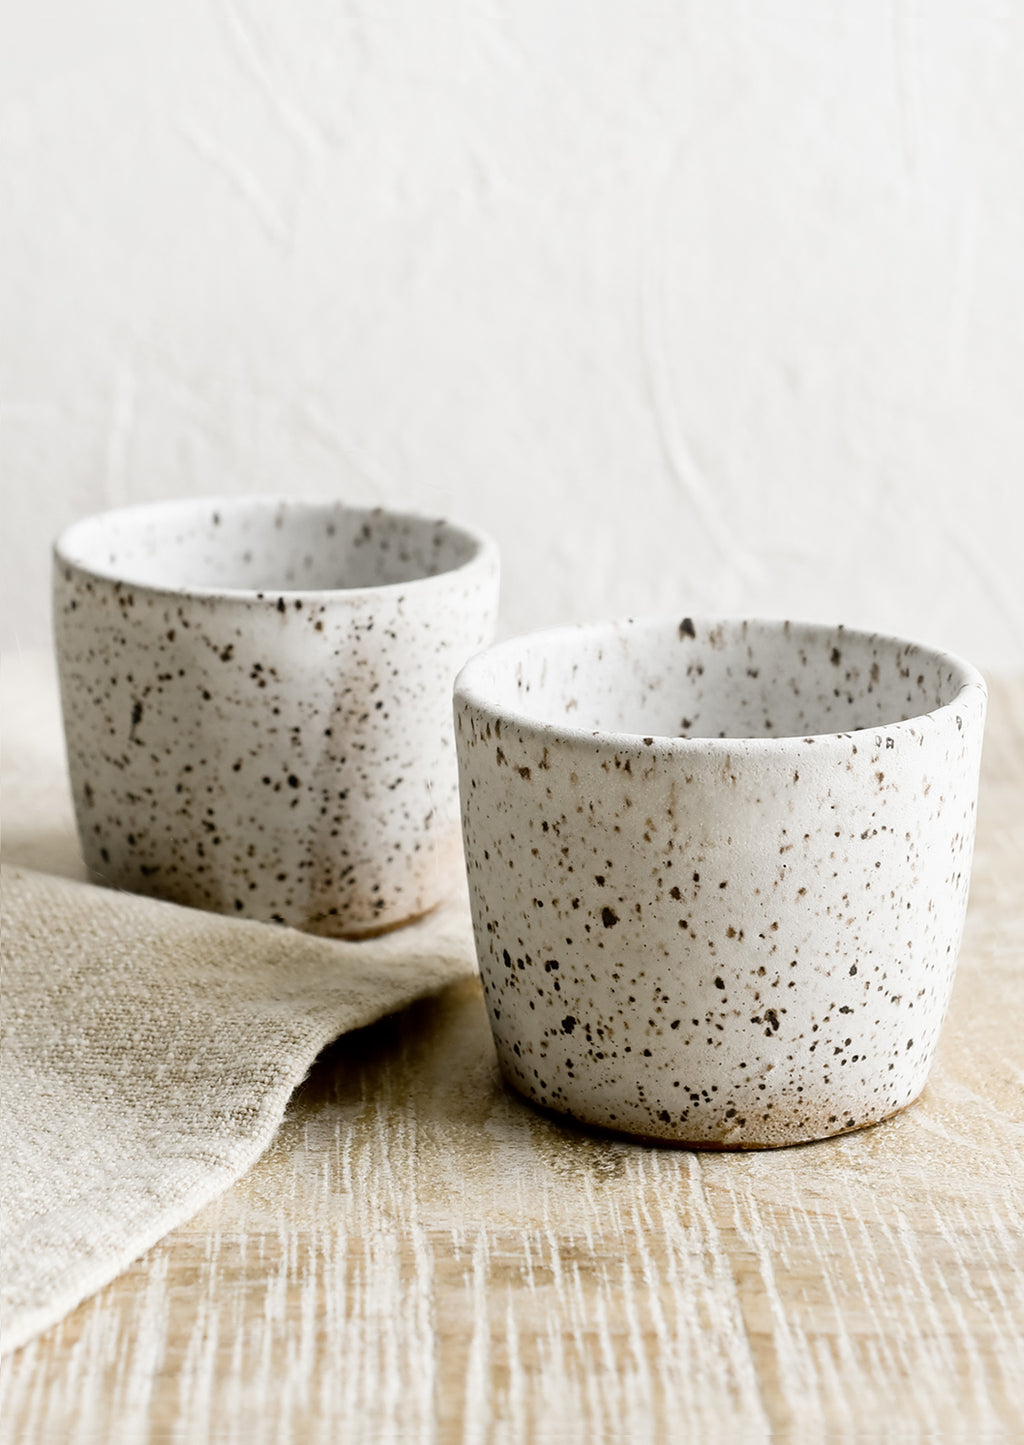 Speckled White: Two espresso cups in speckled white ceramic.